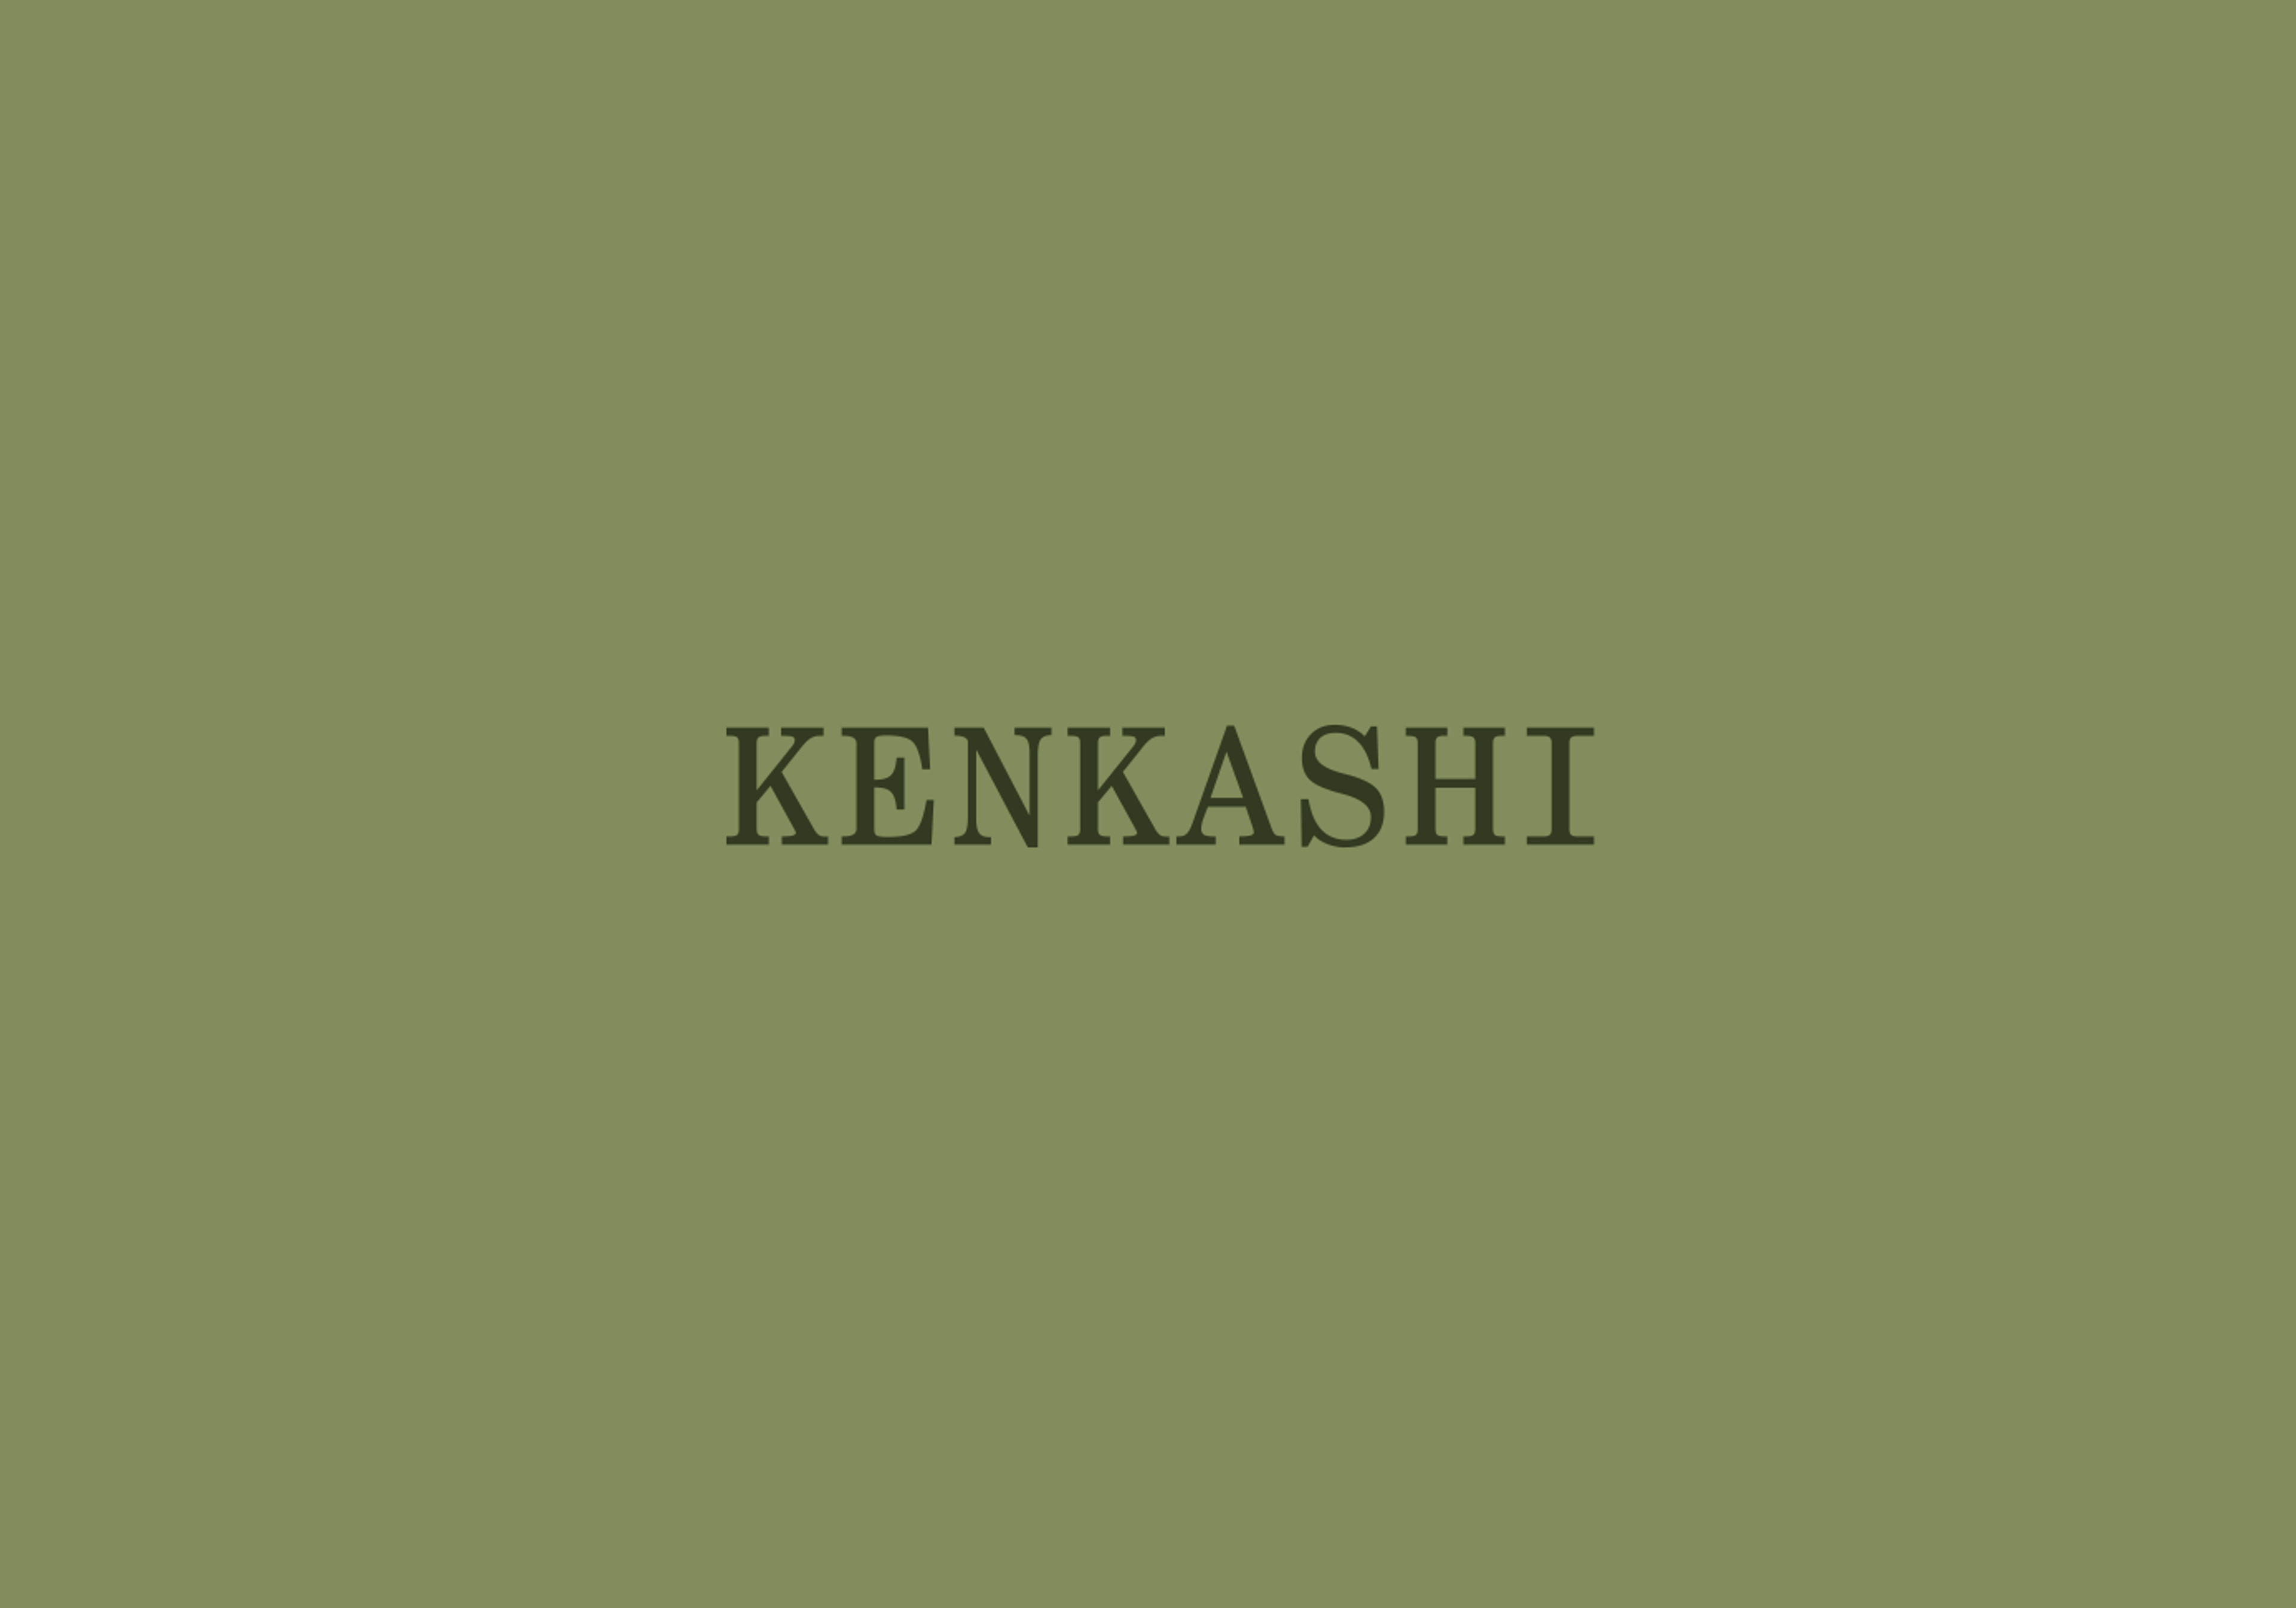 kenkashi logotype against green